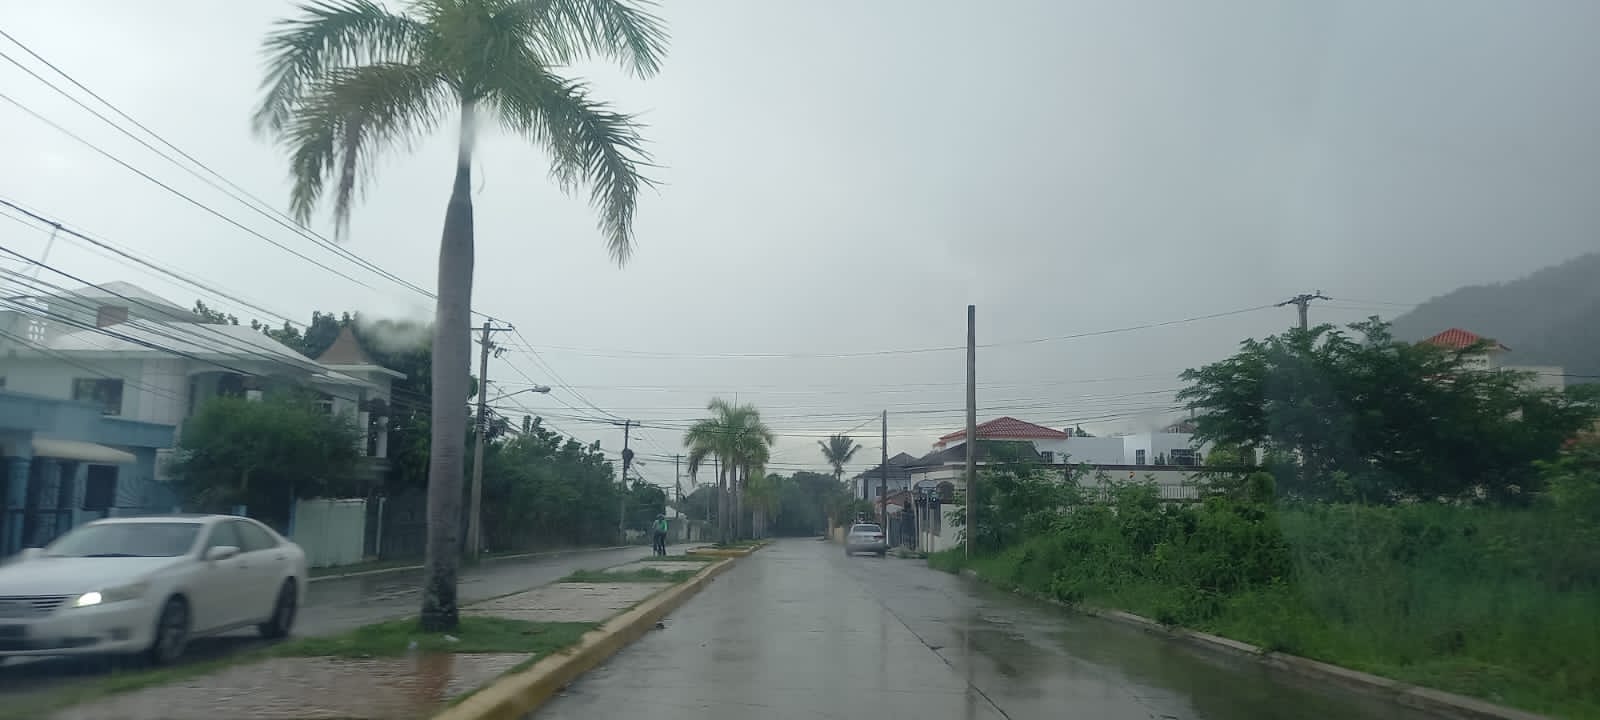  Lluvias registradas en Puerto Plata le ponen fin a prolongada sequía y refrescan temperaturas